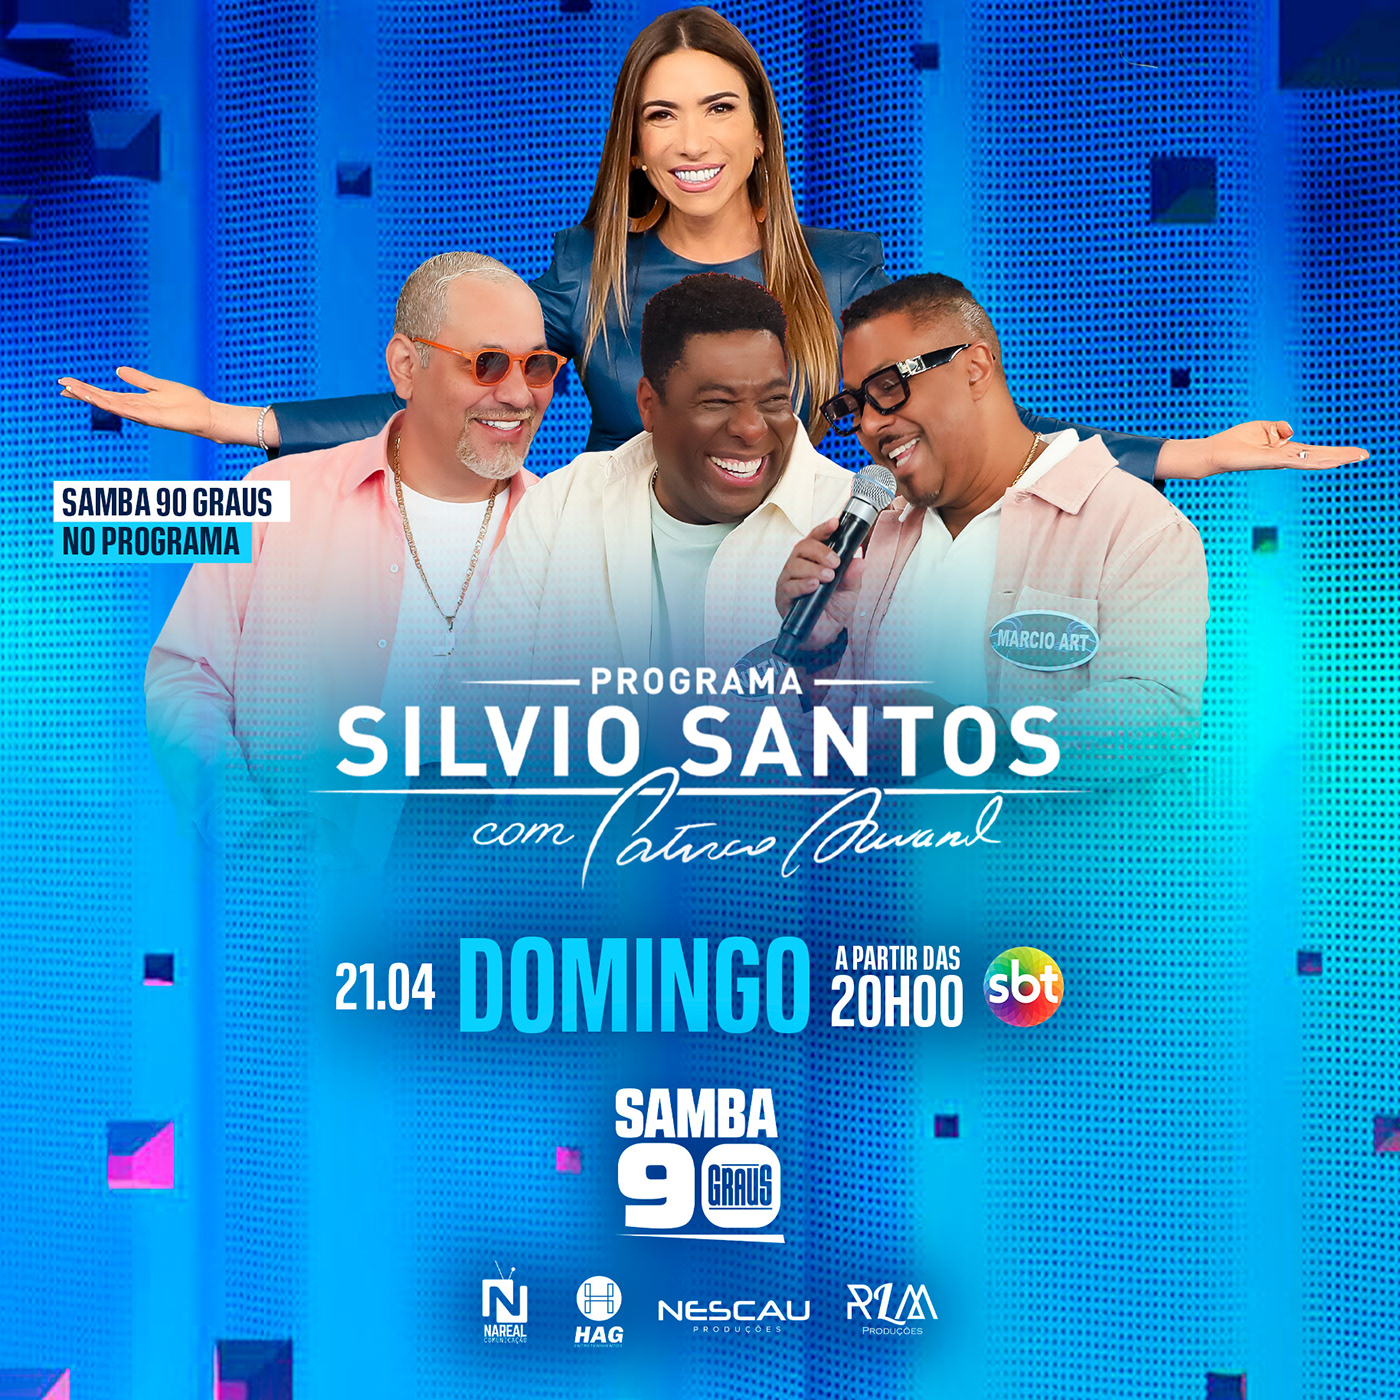 programa de tv silvio santos Data divulgação sbt Televisão Brasil design arte de programa de tv samba 90 graus